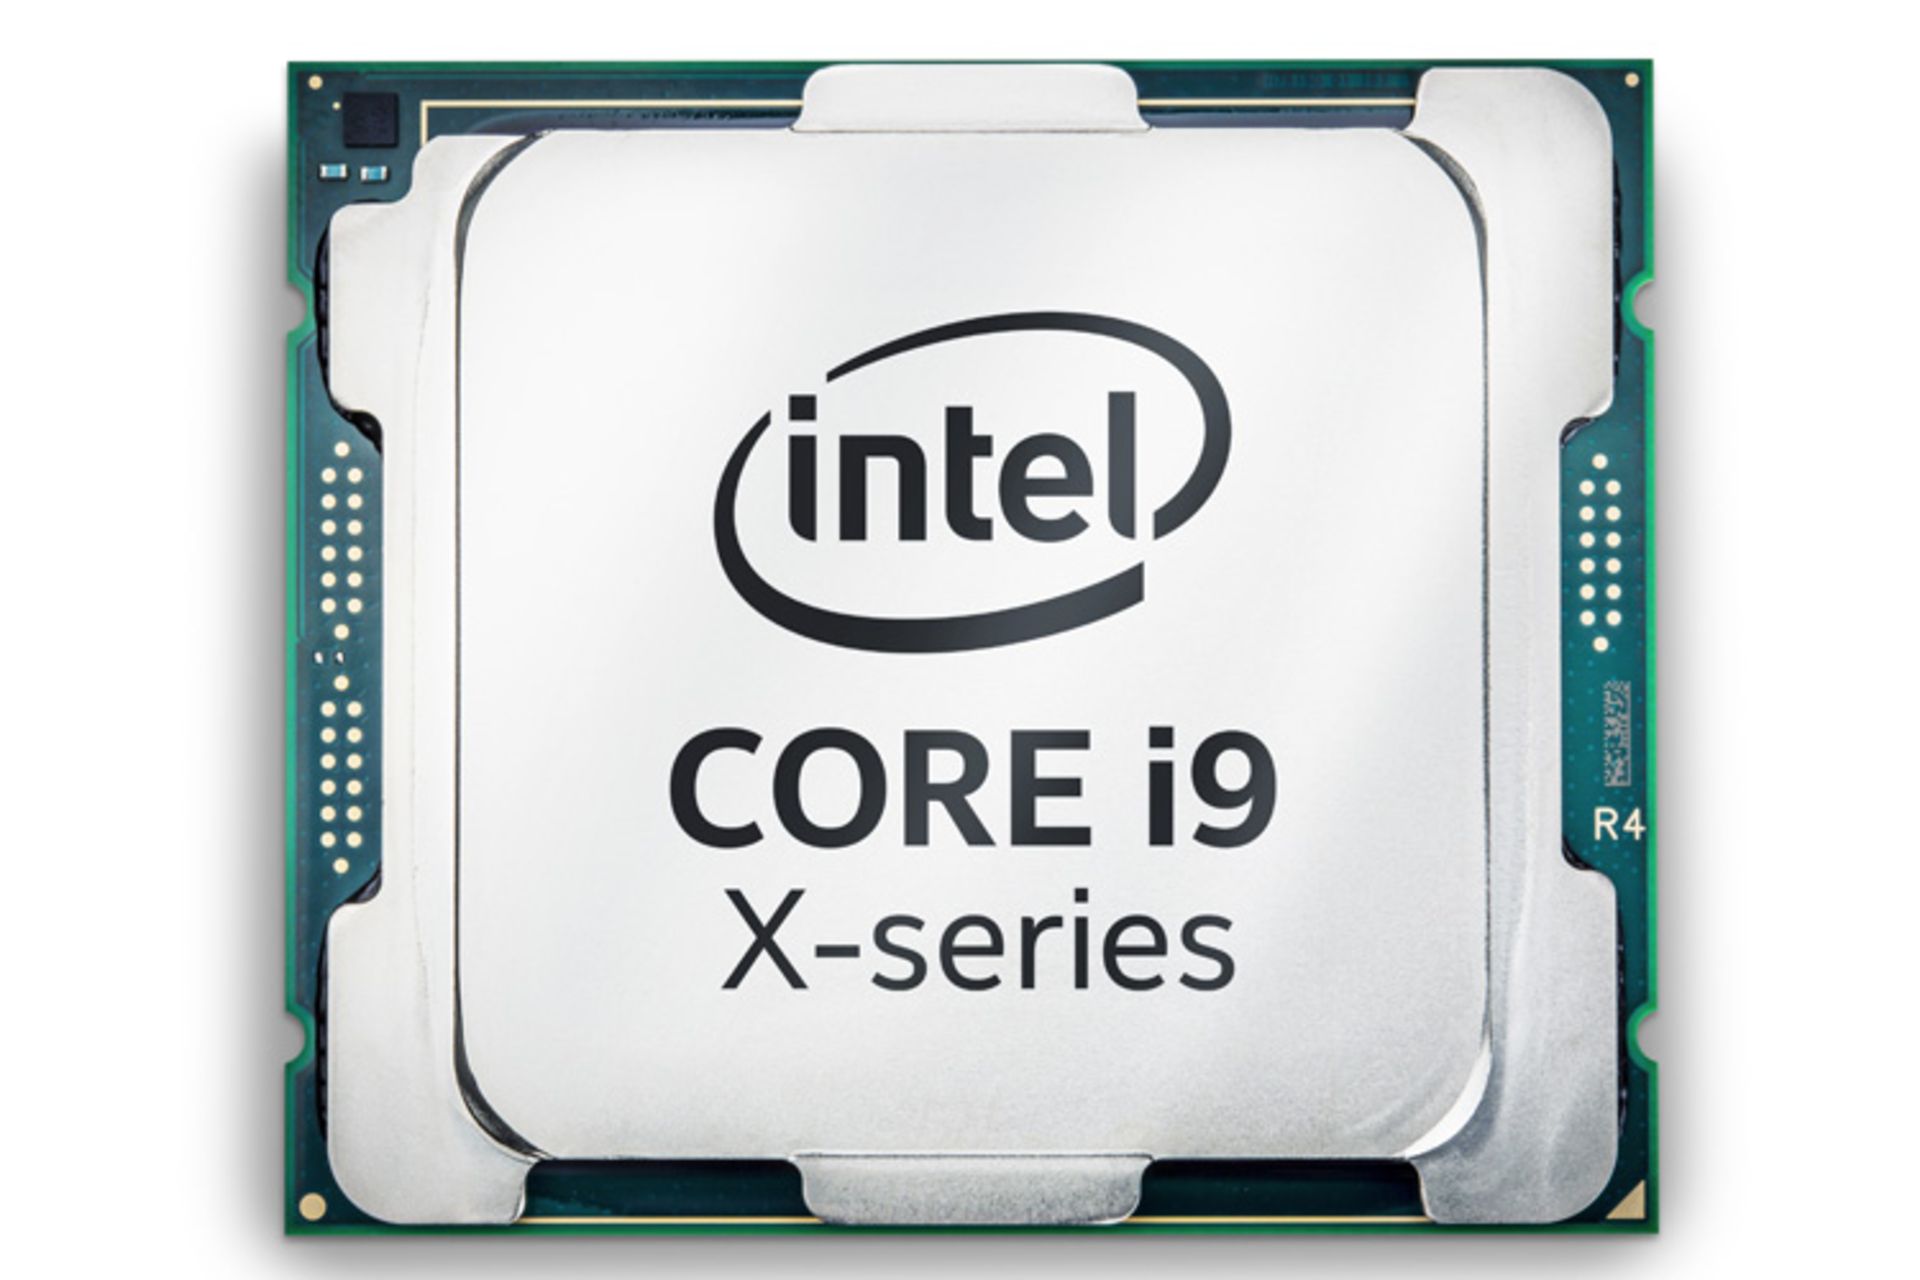 پردازنده Core i9 اینتل